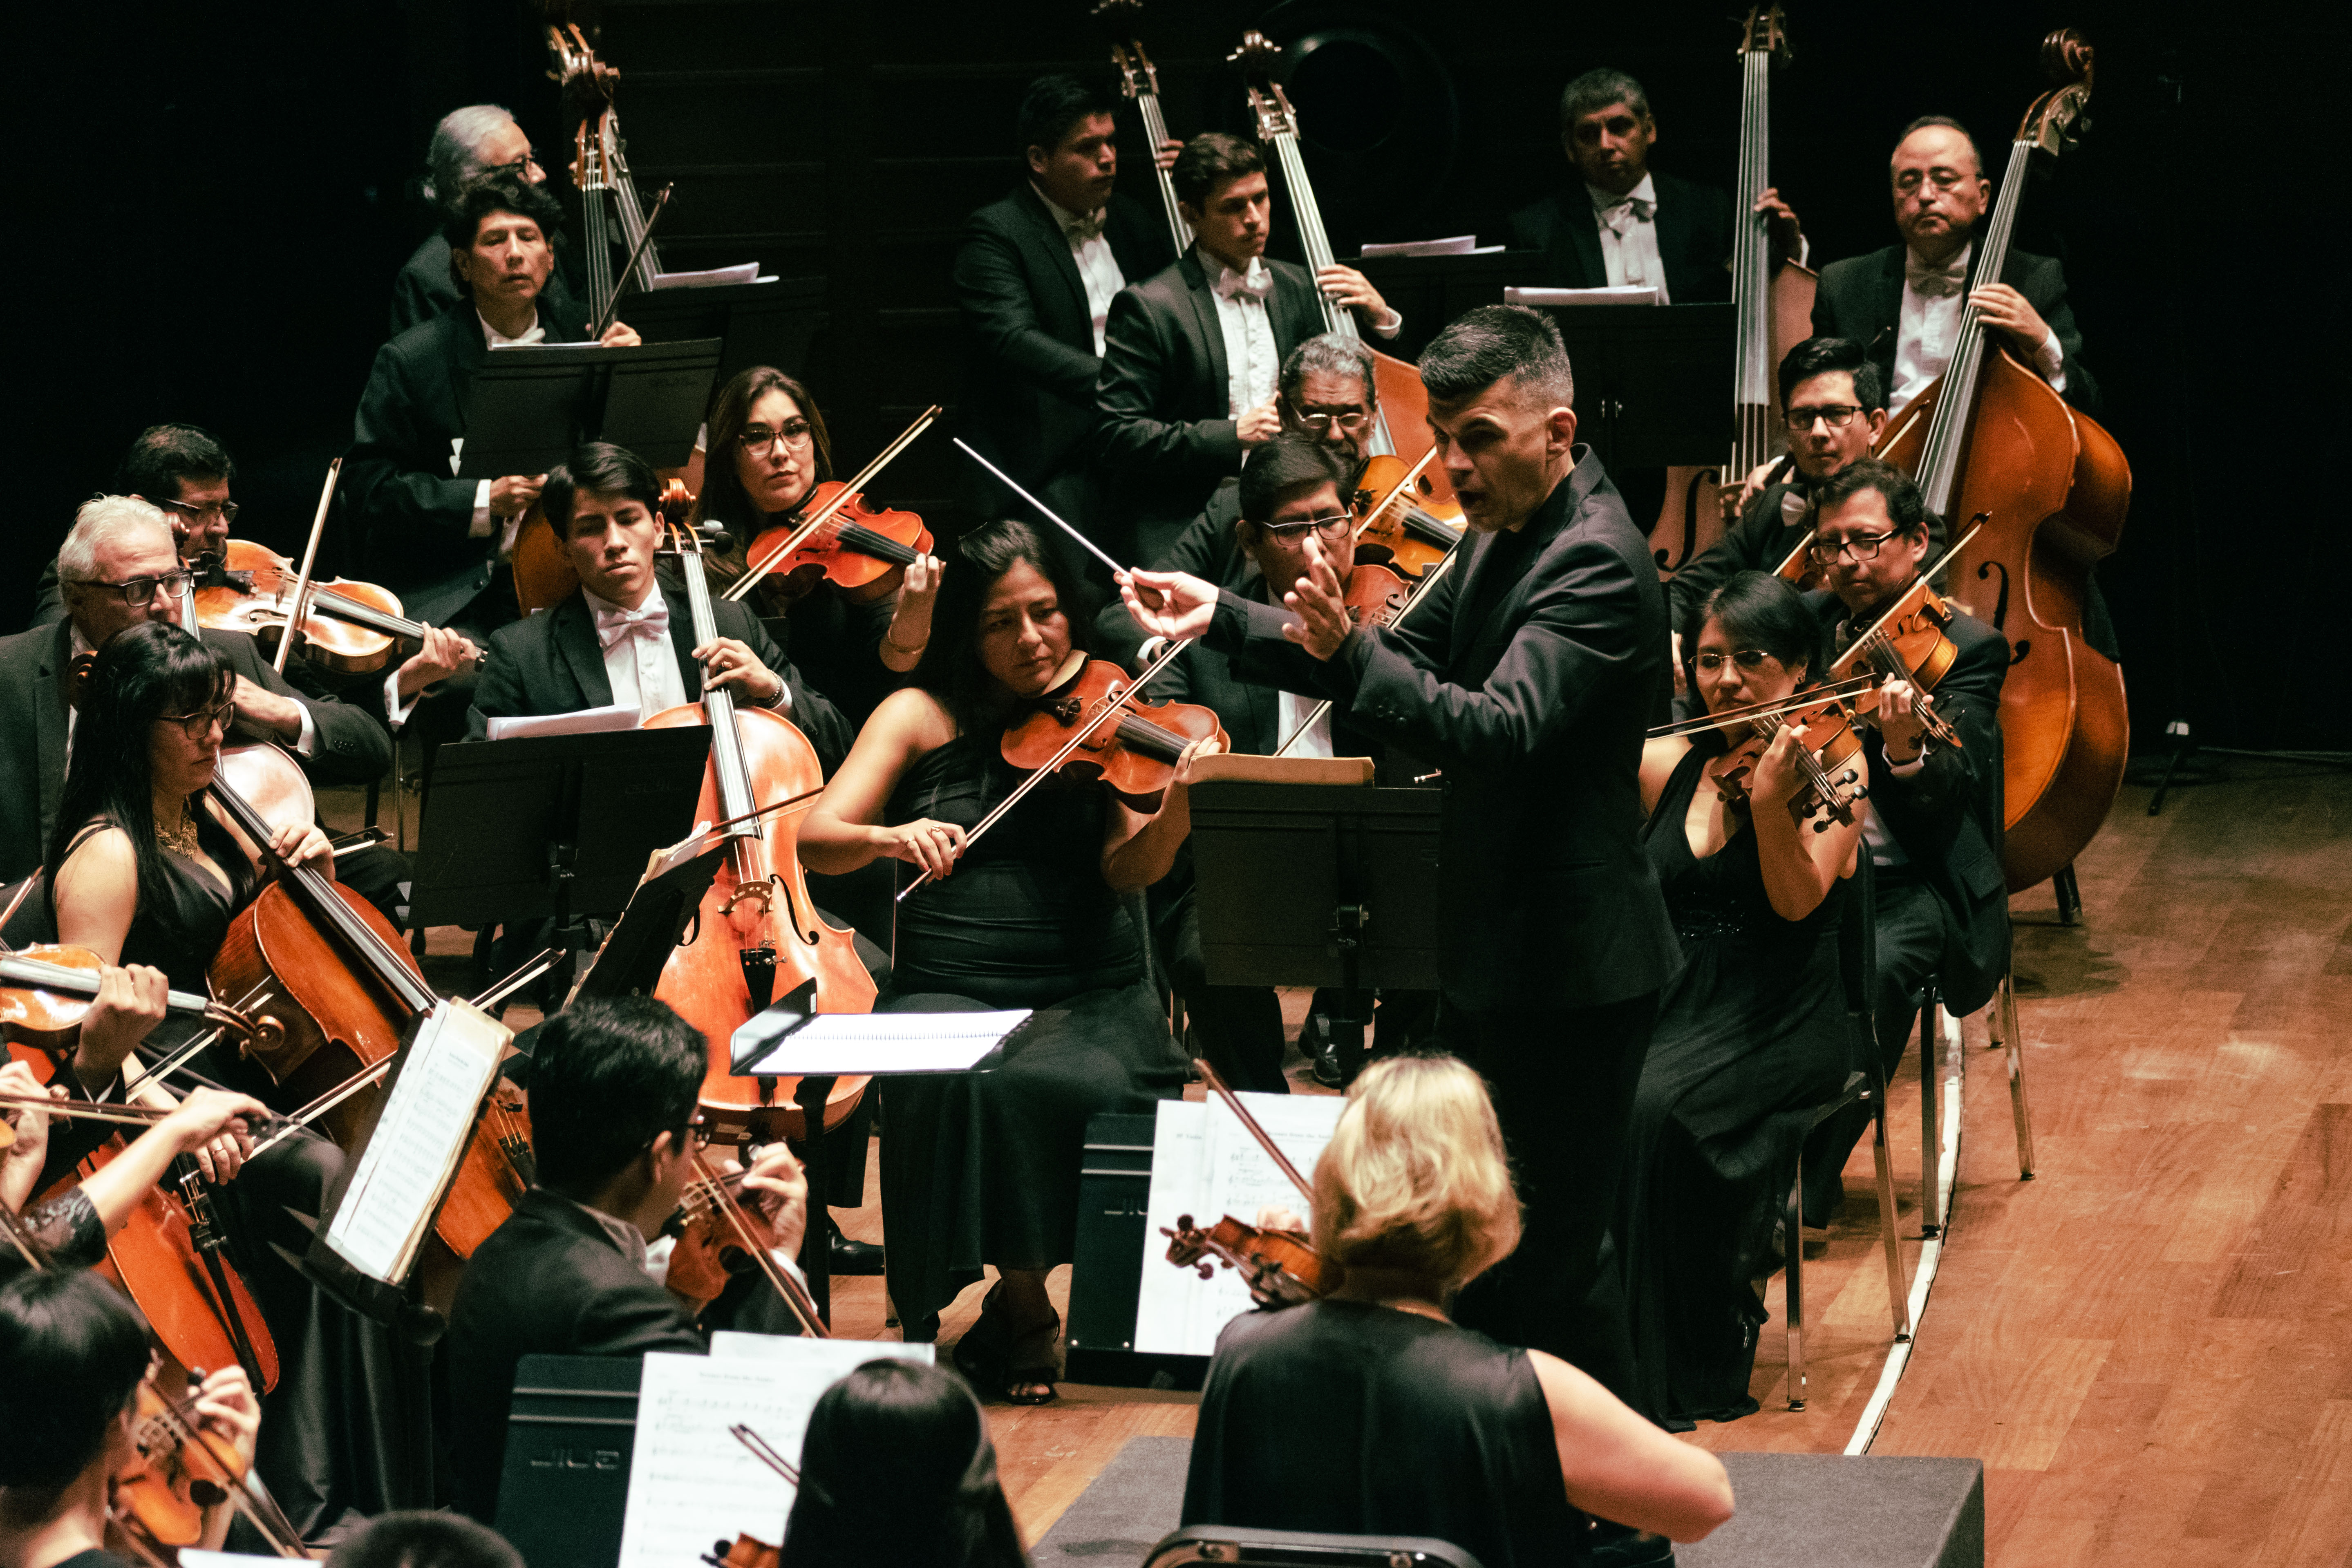 Orquesta Sinfónica Nacional del Perú presenta su concierto “Infinito”